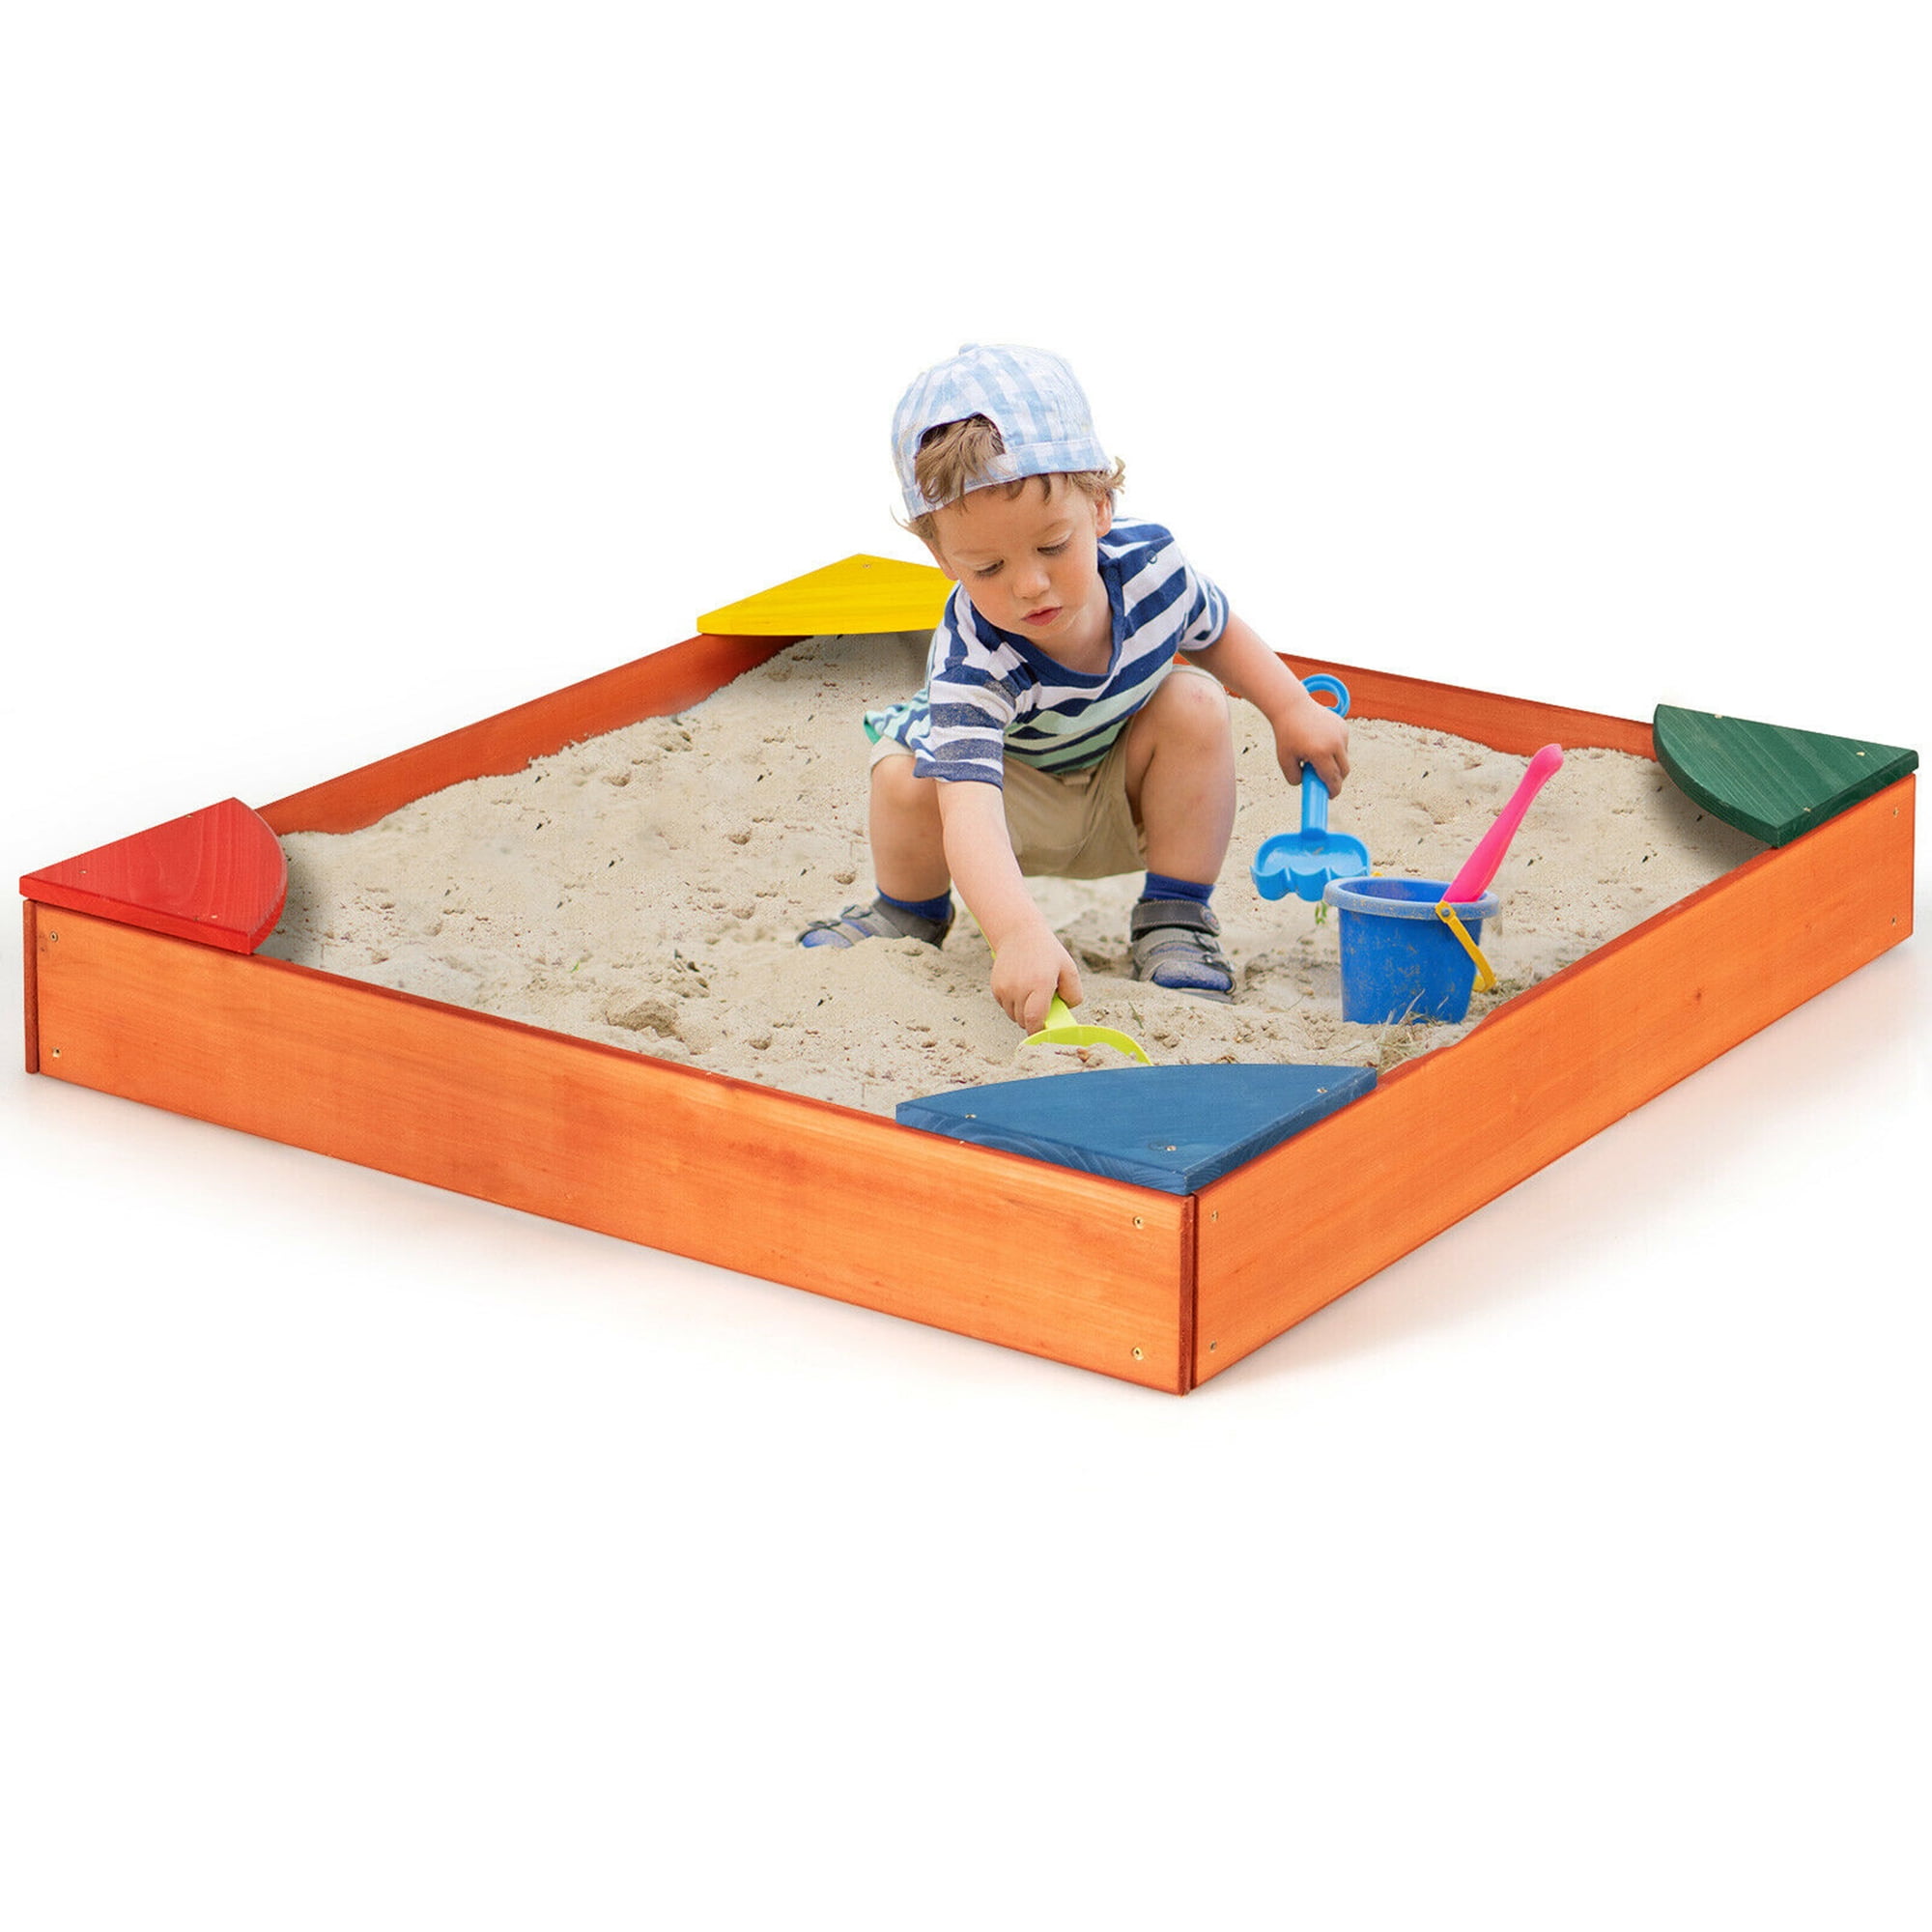 Details about   Kids Outdoor Playset Cedar Sandbox 